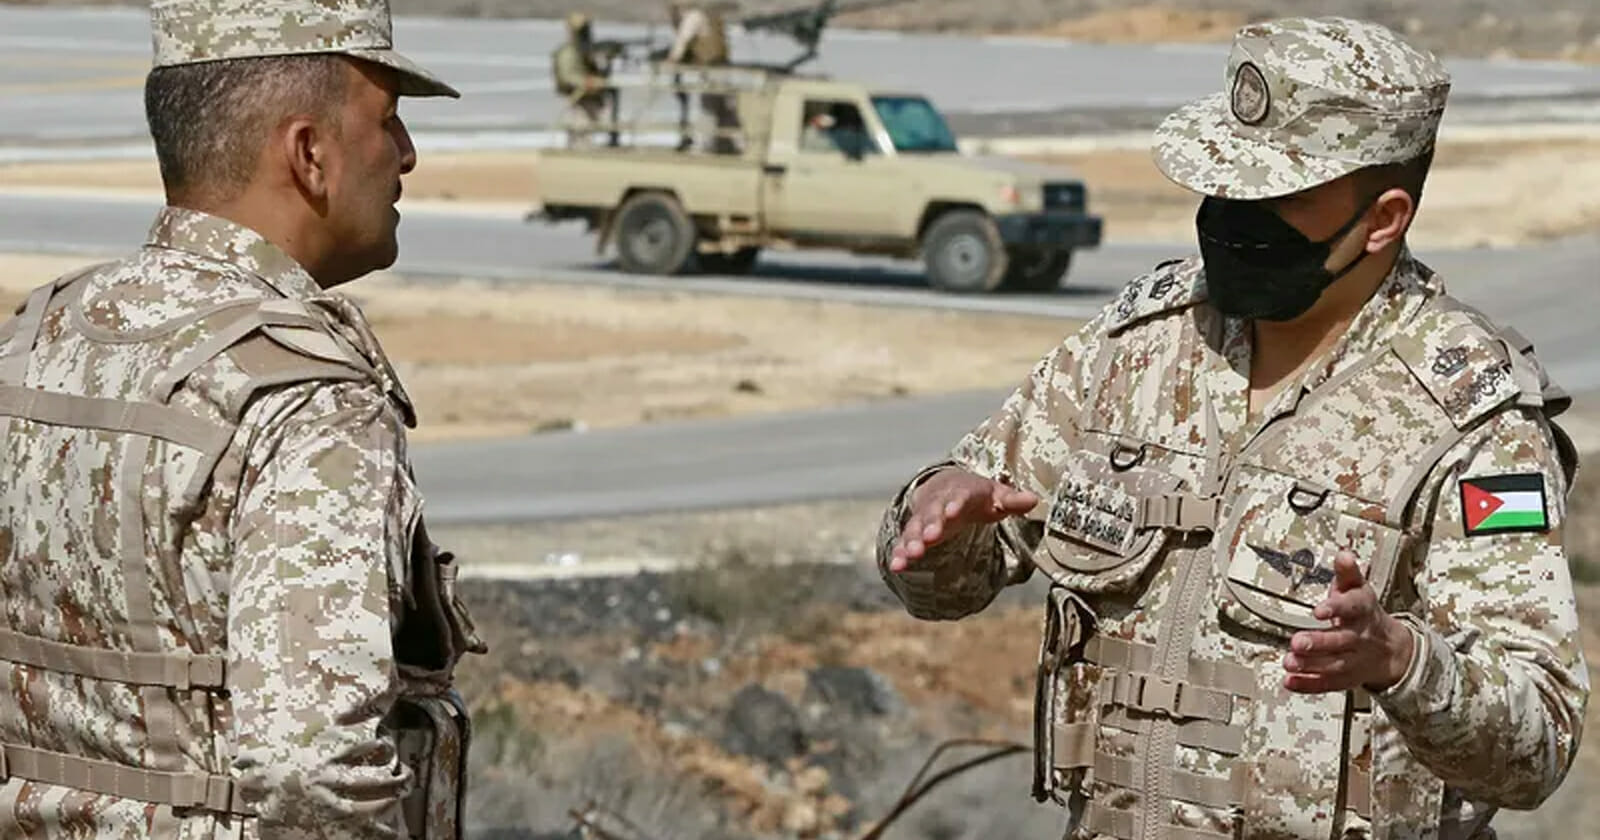 الجيش الأردني يحبط تهريب مخدرات قادمة من سوريا watanserb.com